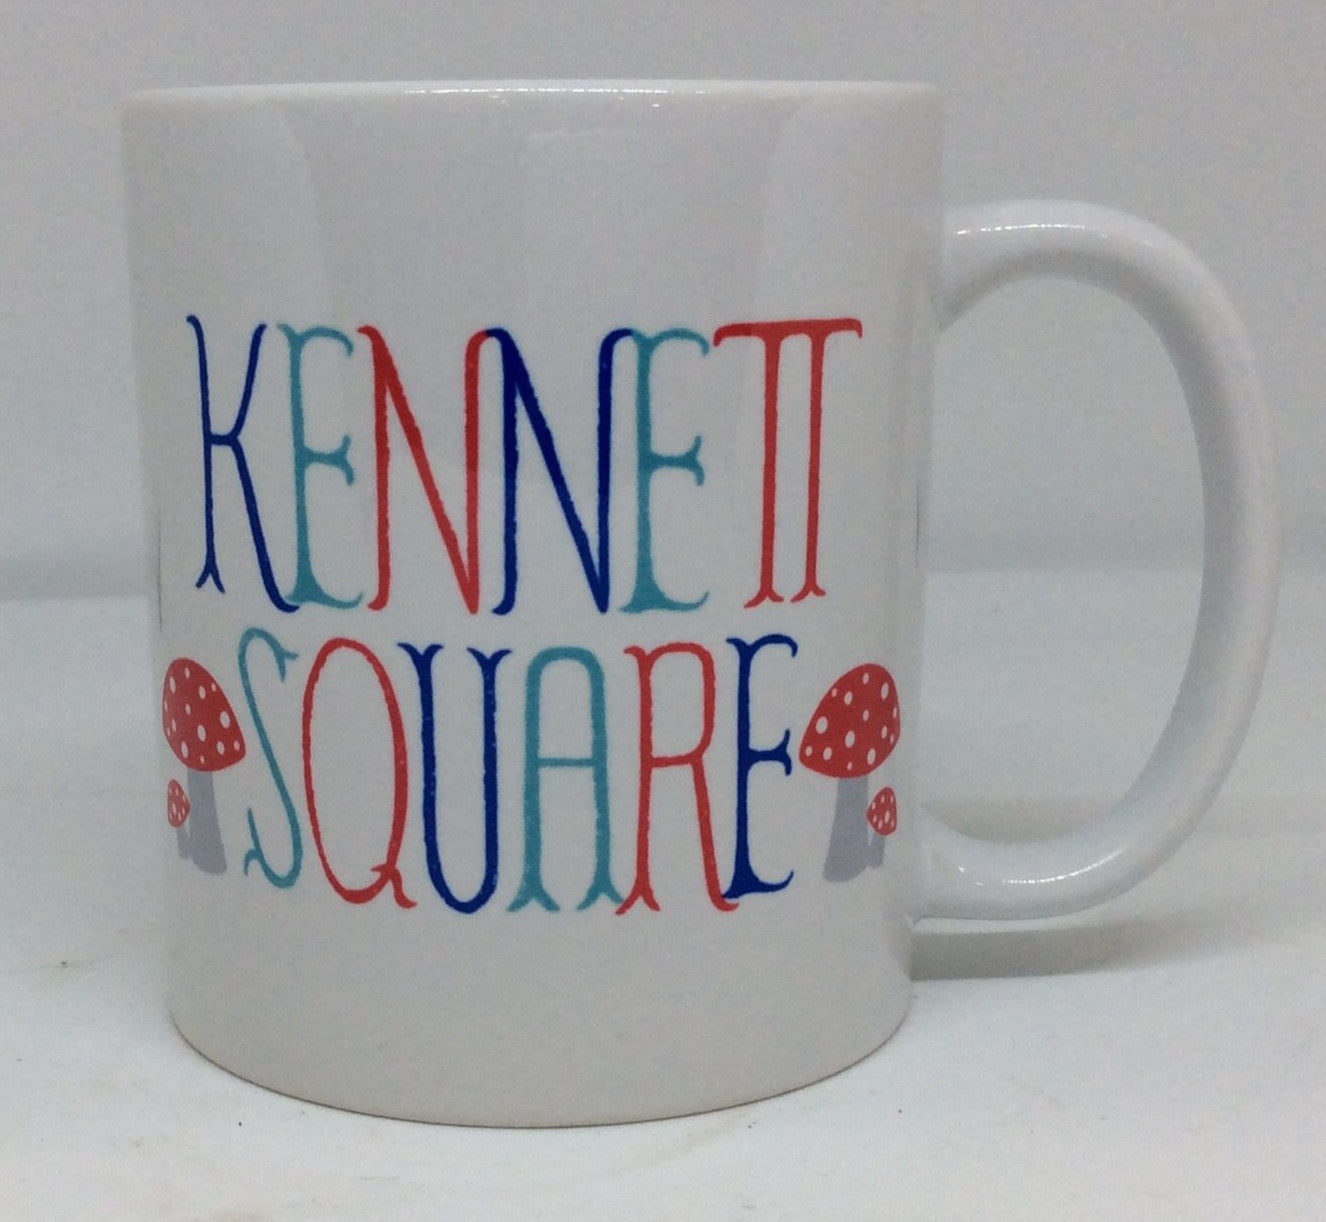 Mug - Kennett Square